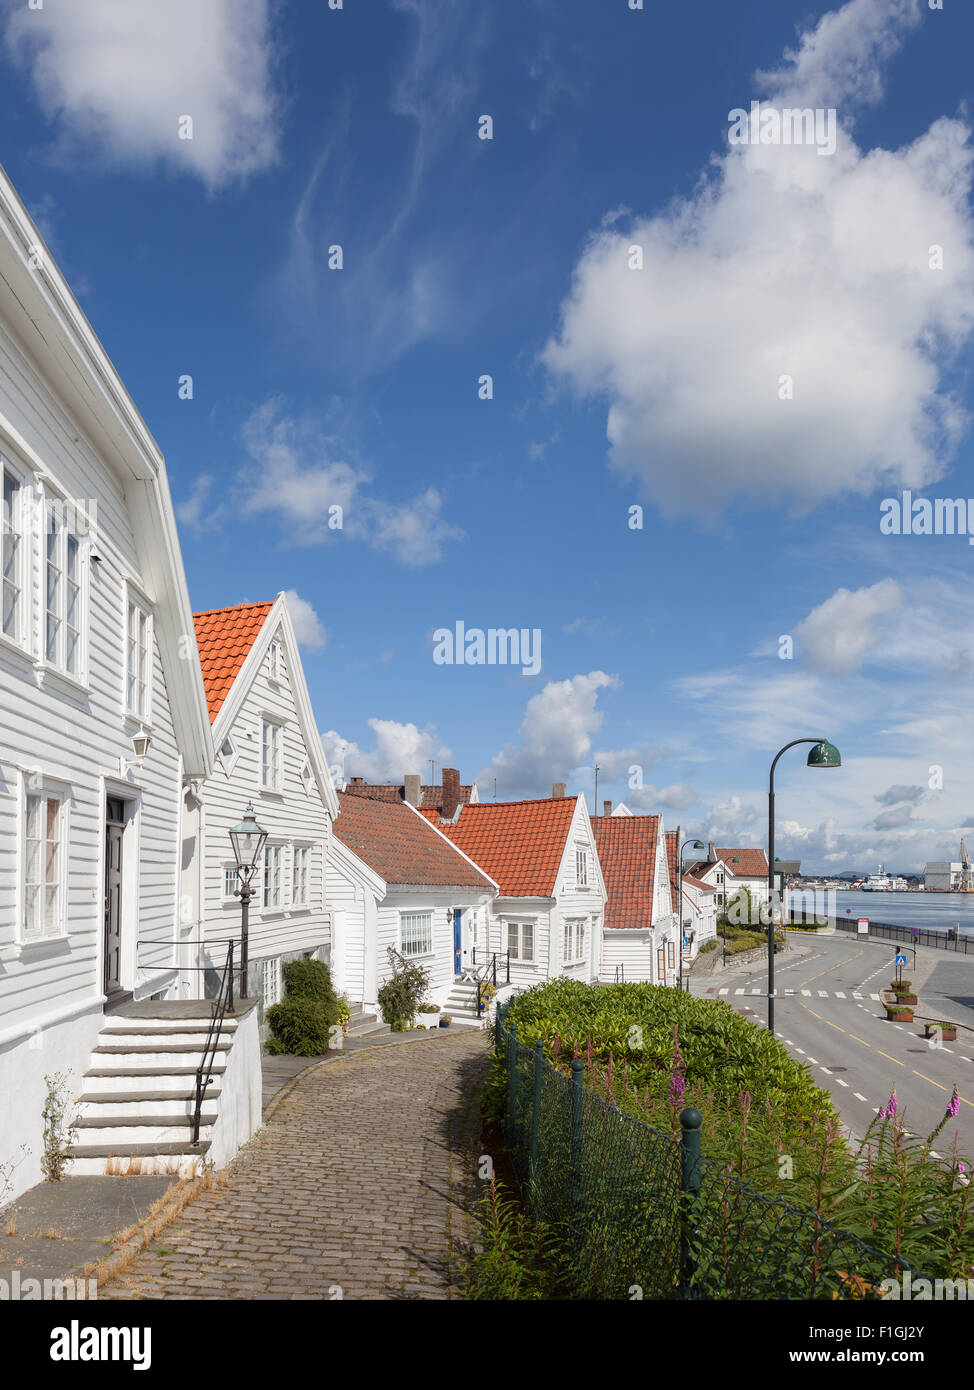 Vue de la cuisine norvégienne traditionnelle maisons en bois blanc, à Stavanger, en Norvège. Banque D'Images